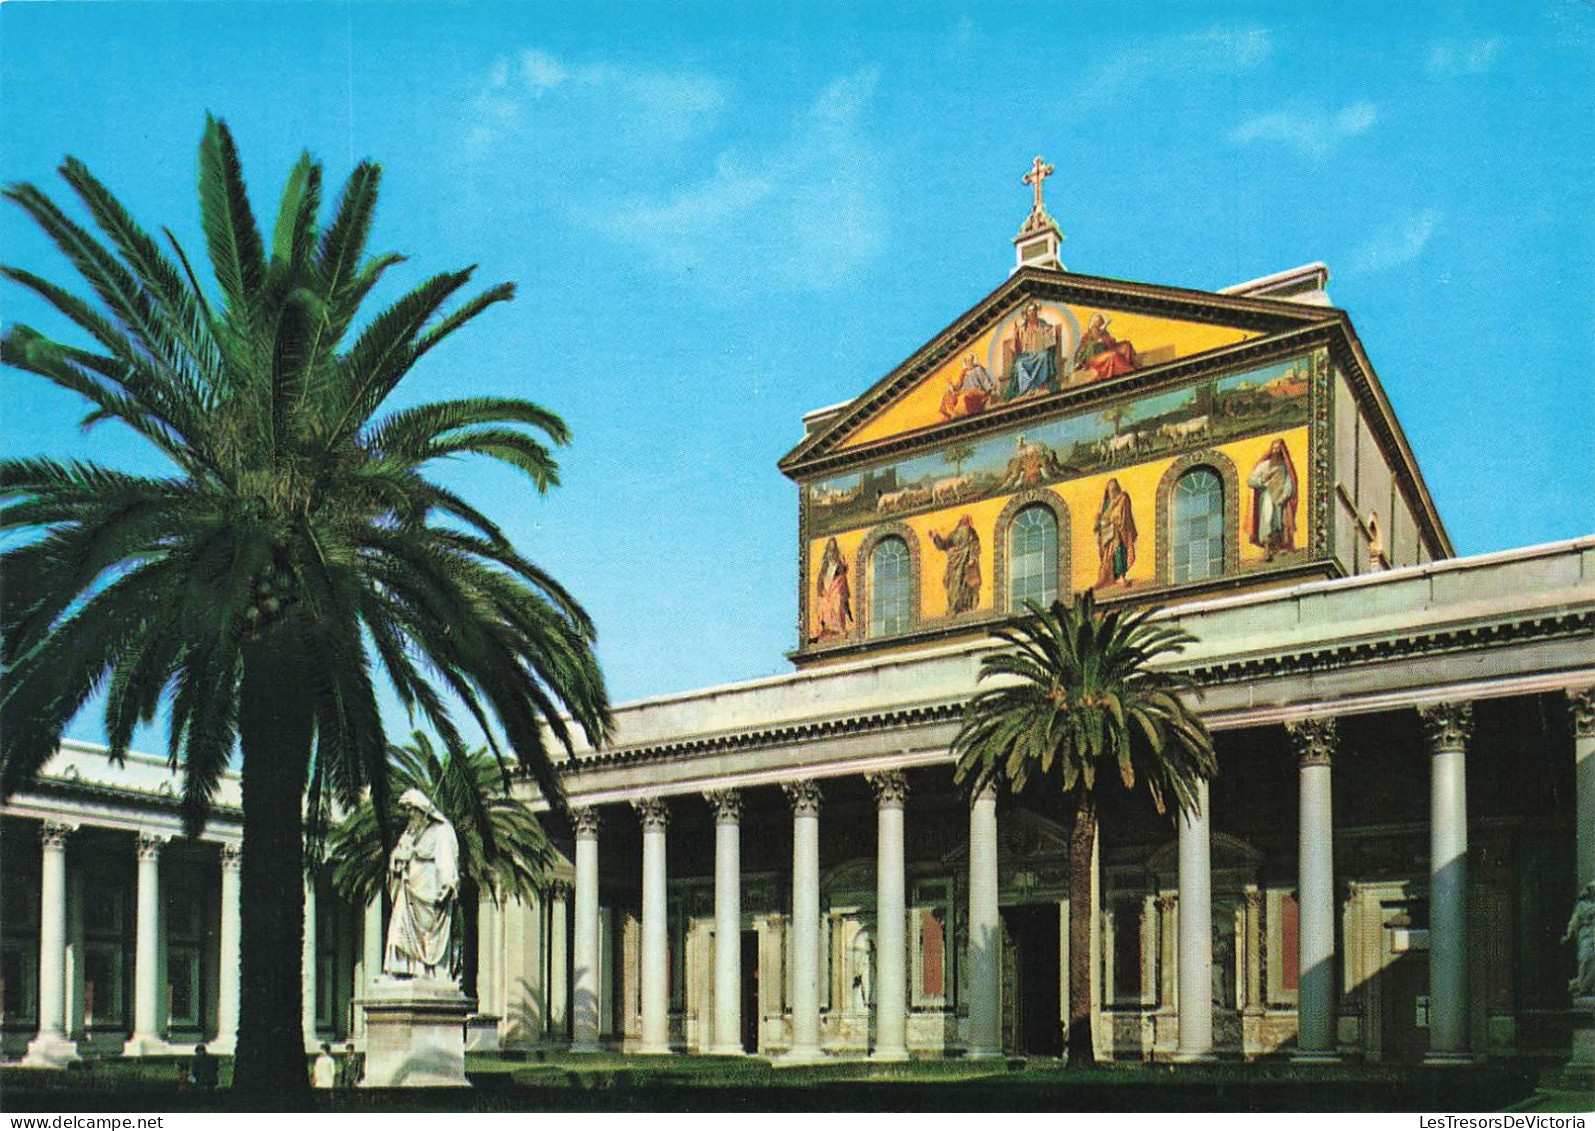 ITALIE - Roma - Vue Sur La Basilique De St Paul - Vue De L'extérieure - Vue Générale - Carte Postale - Kirchen